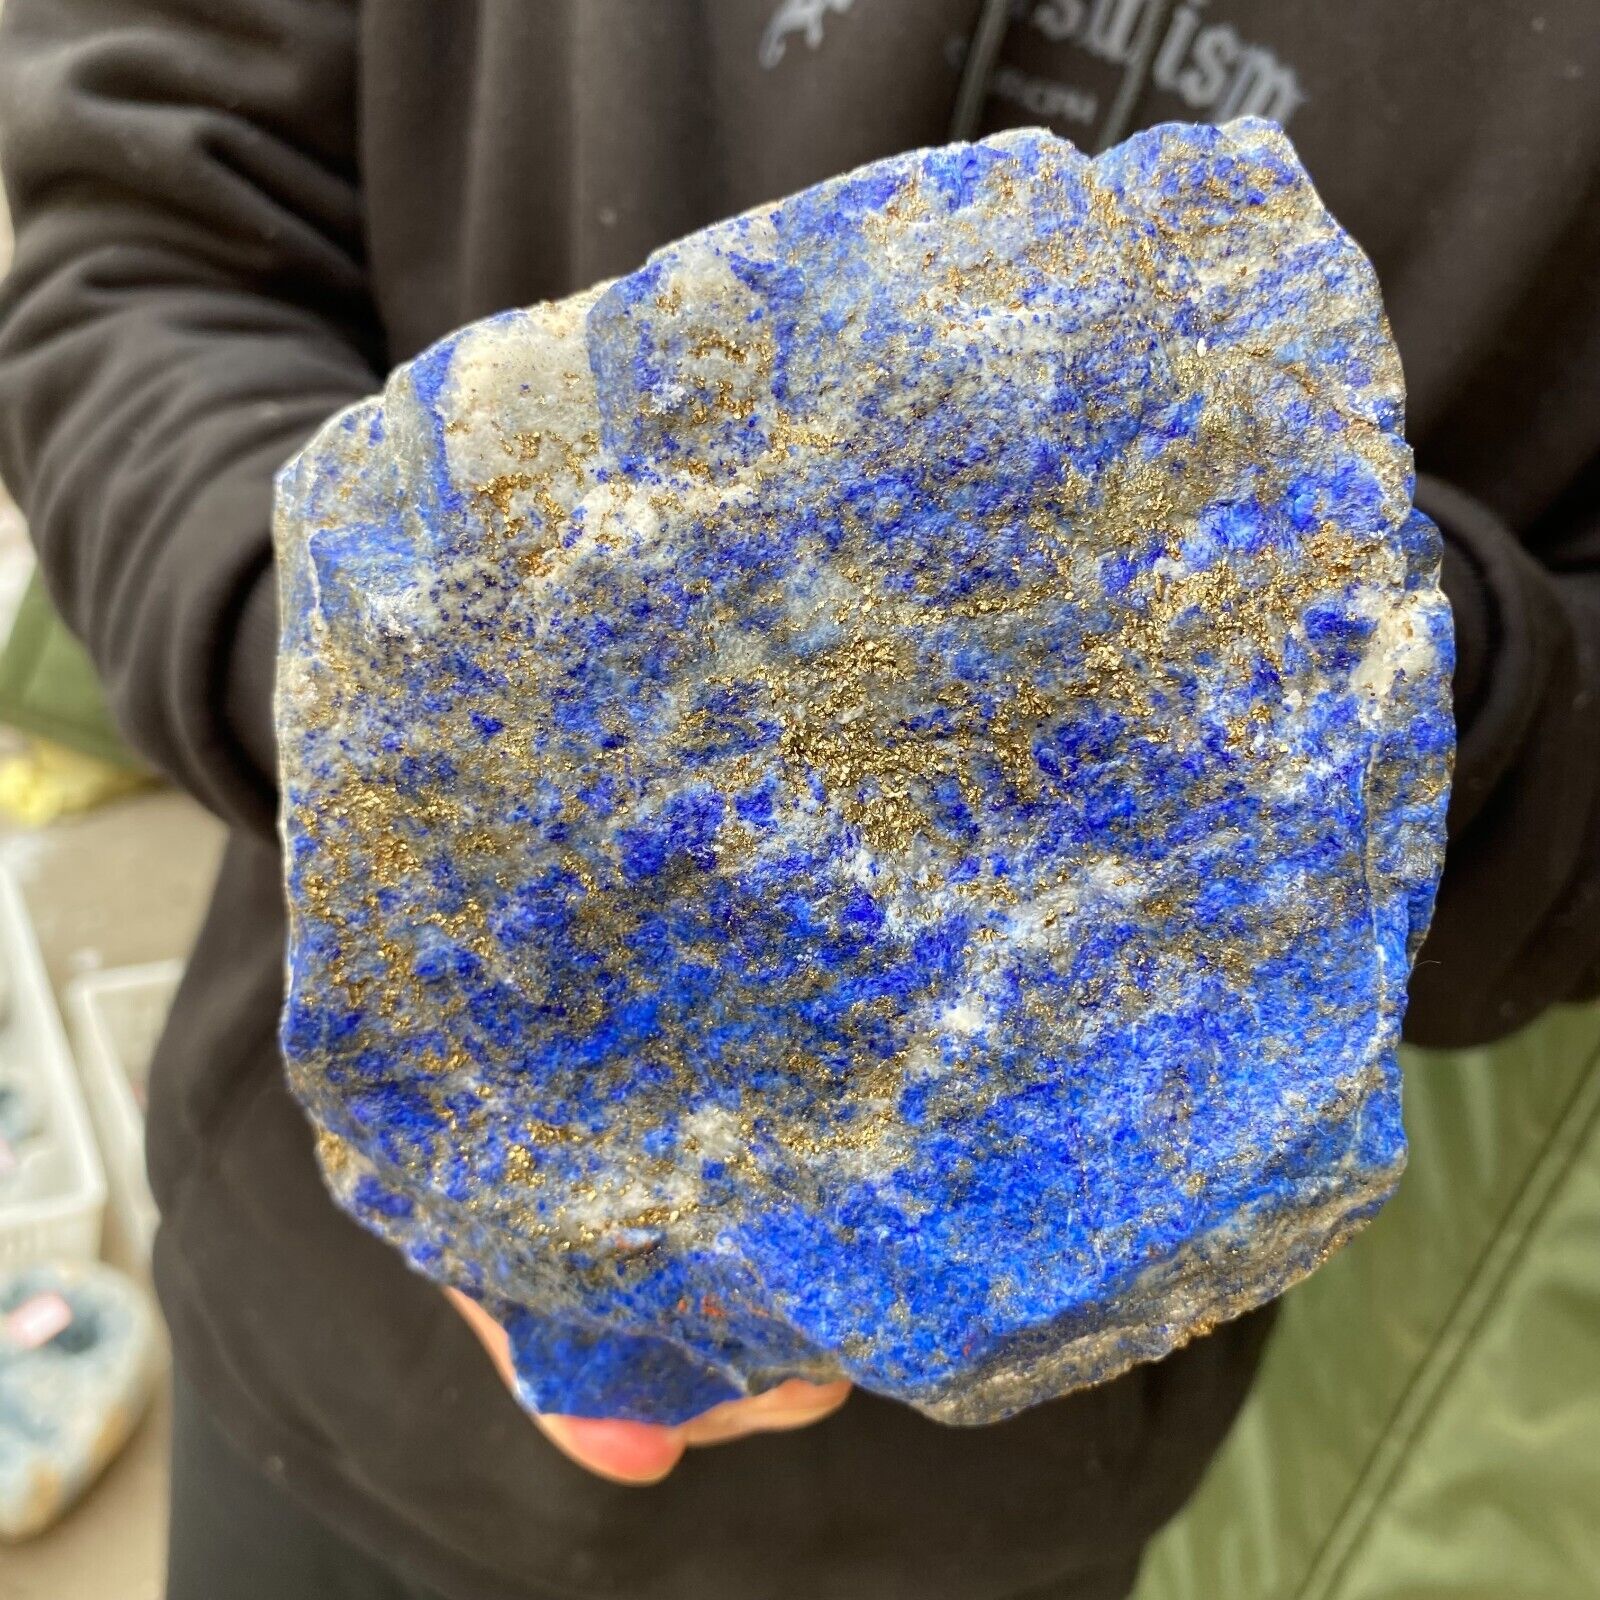 5.4lb Natural Afghanistan Lapis lazuli Crystal Rough Gemstone Mineral Specimen